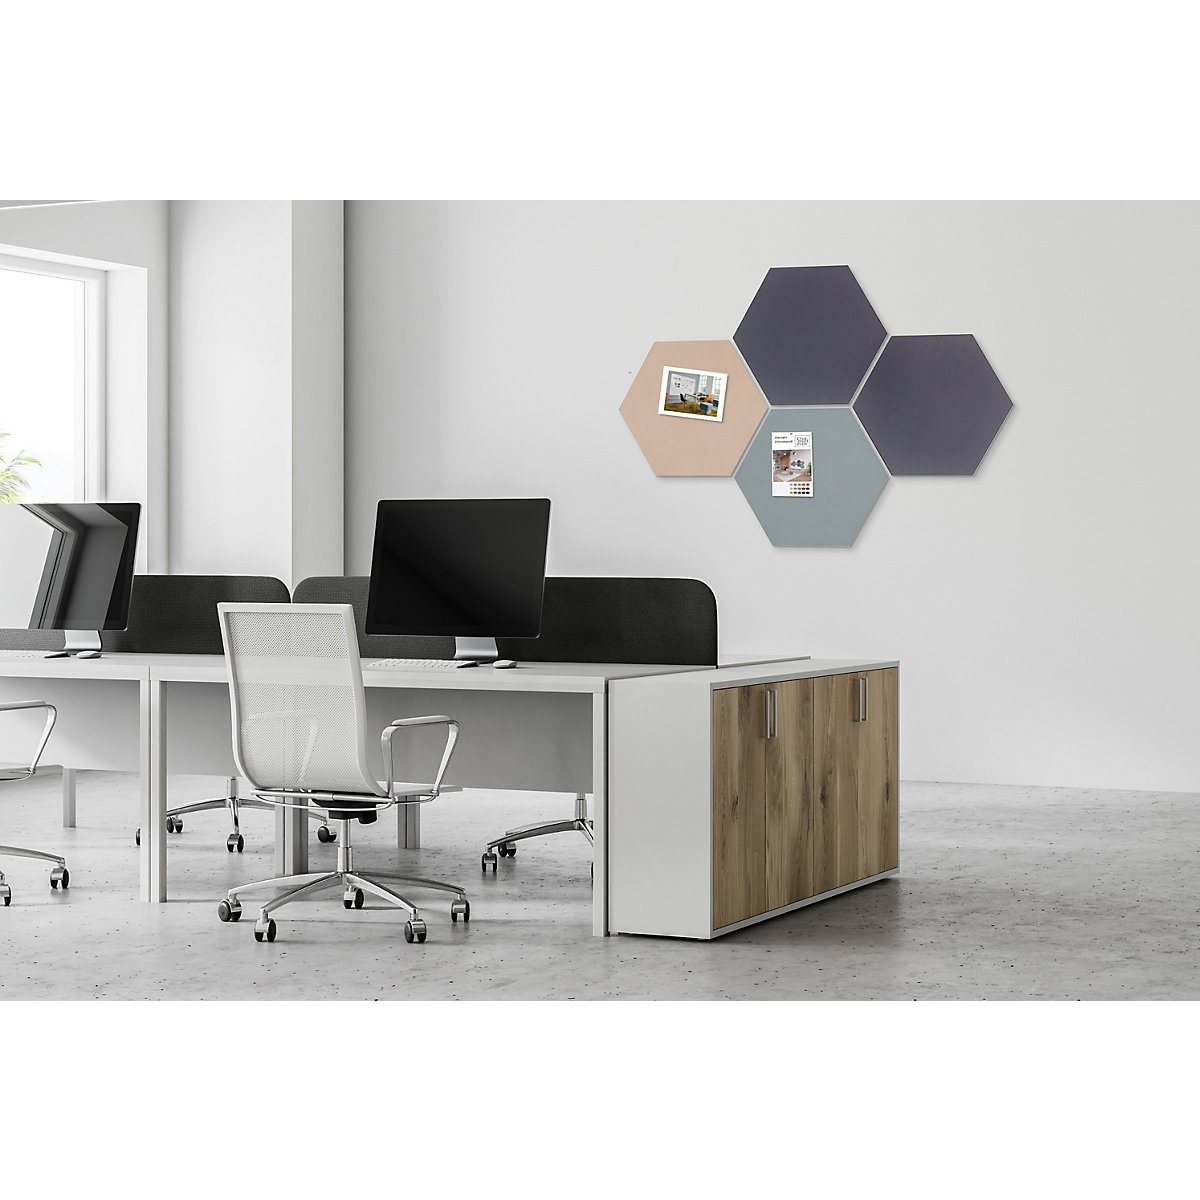 Hexagonal designer pin board – Chameleon (Product illustration 64)-63